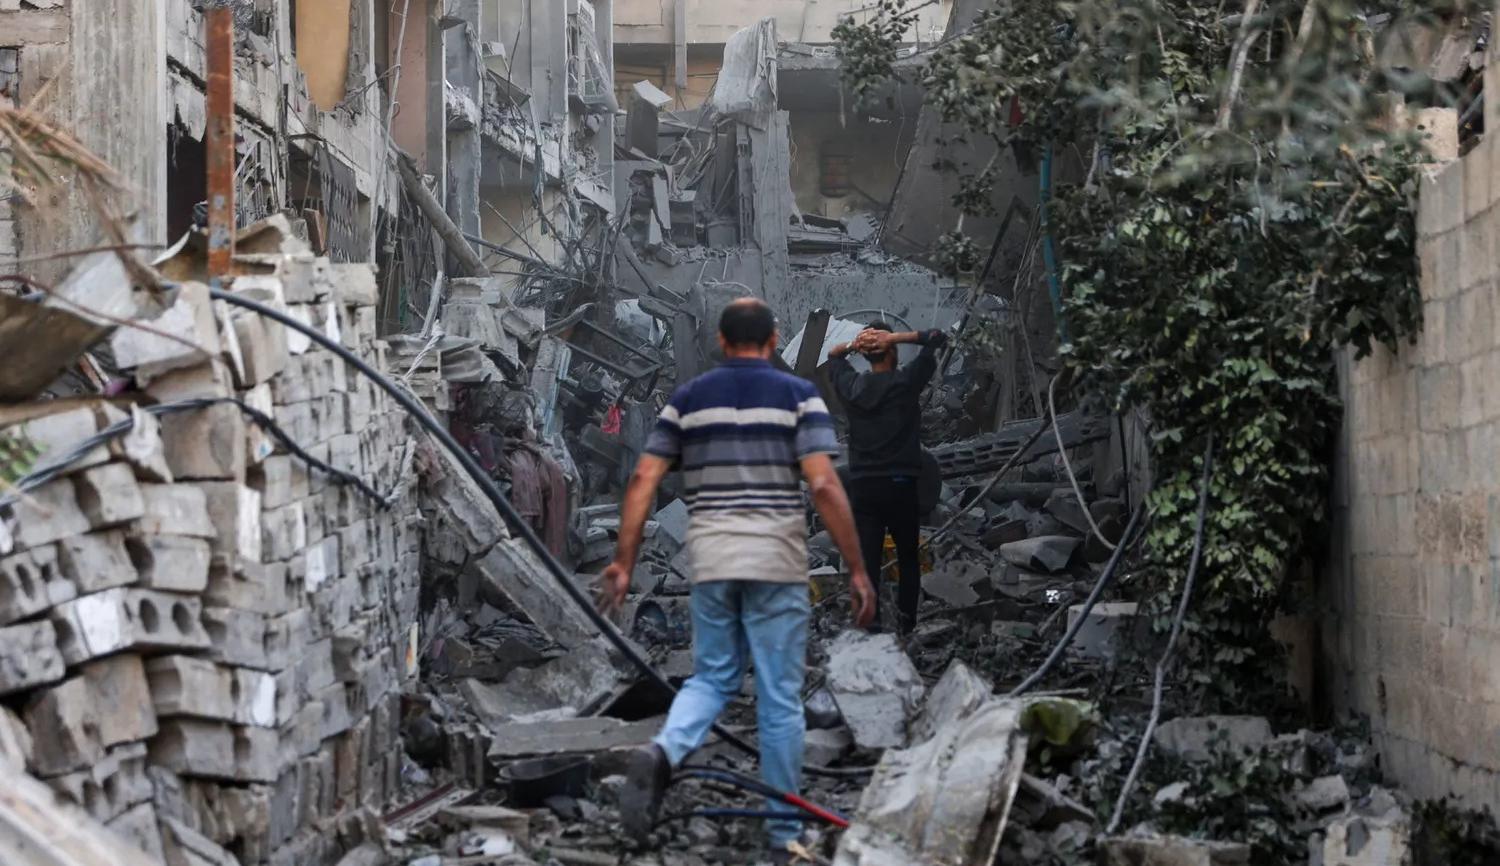 الدمار الذي خلفه القصف الإسرائيلي في نهاية الأسبوع في غزة  (نقلاً عن "هآرتس")